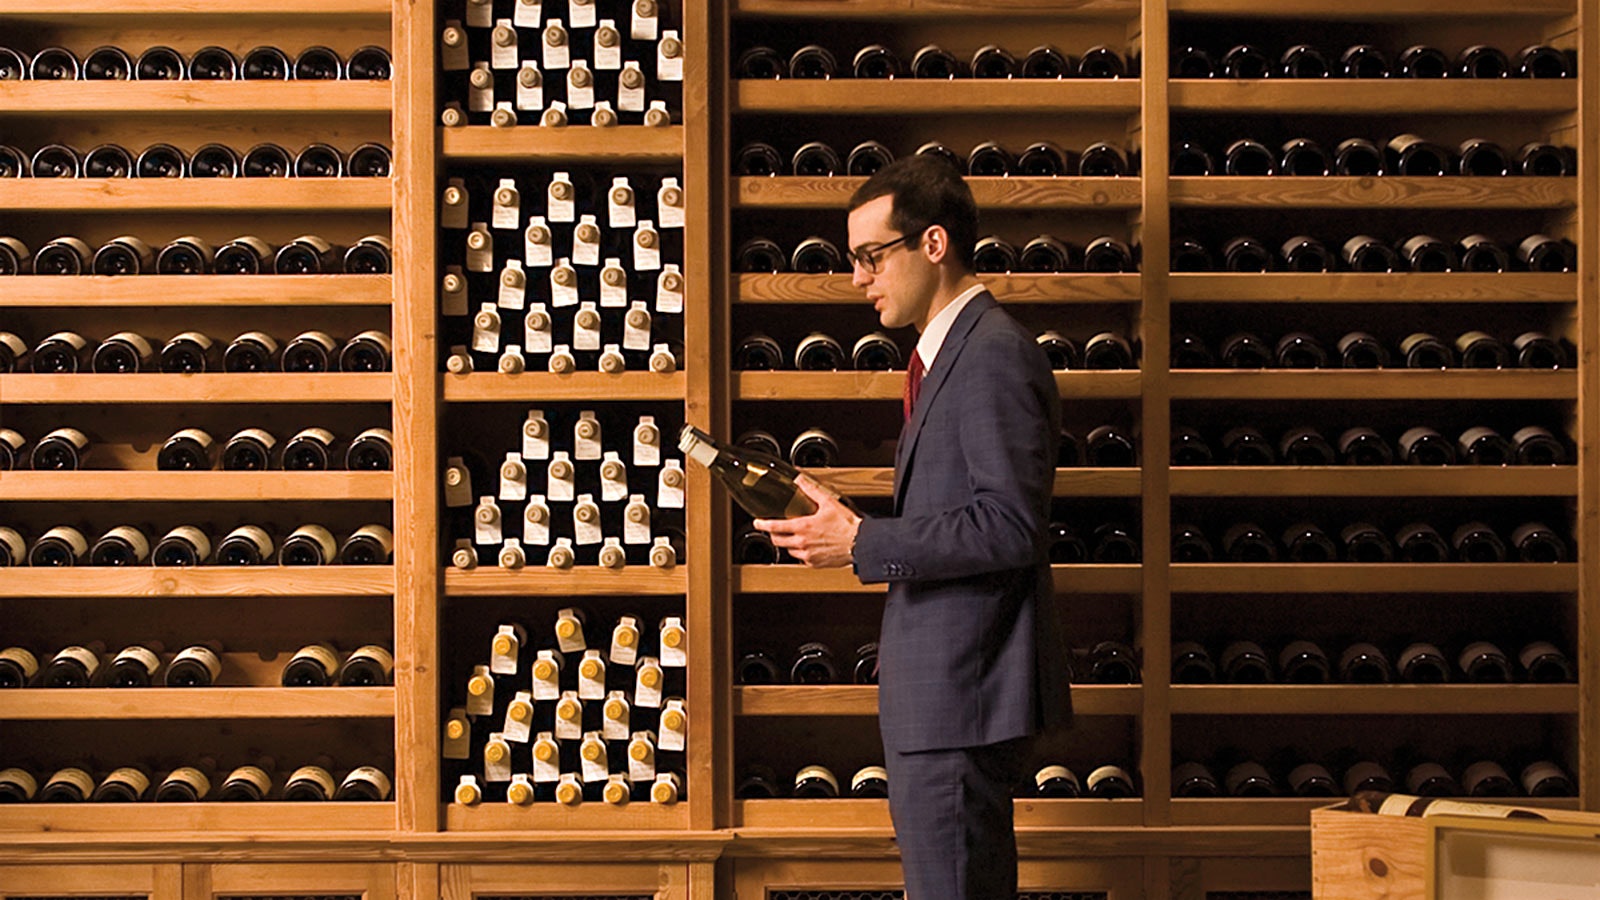   Cracco vyno direktorius, laikantis butelį priešais medinių vyno lentynų sieną, pilną butelių